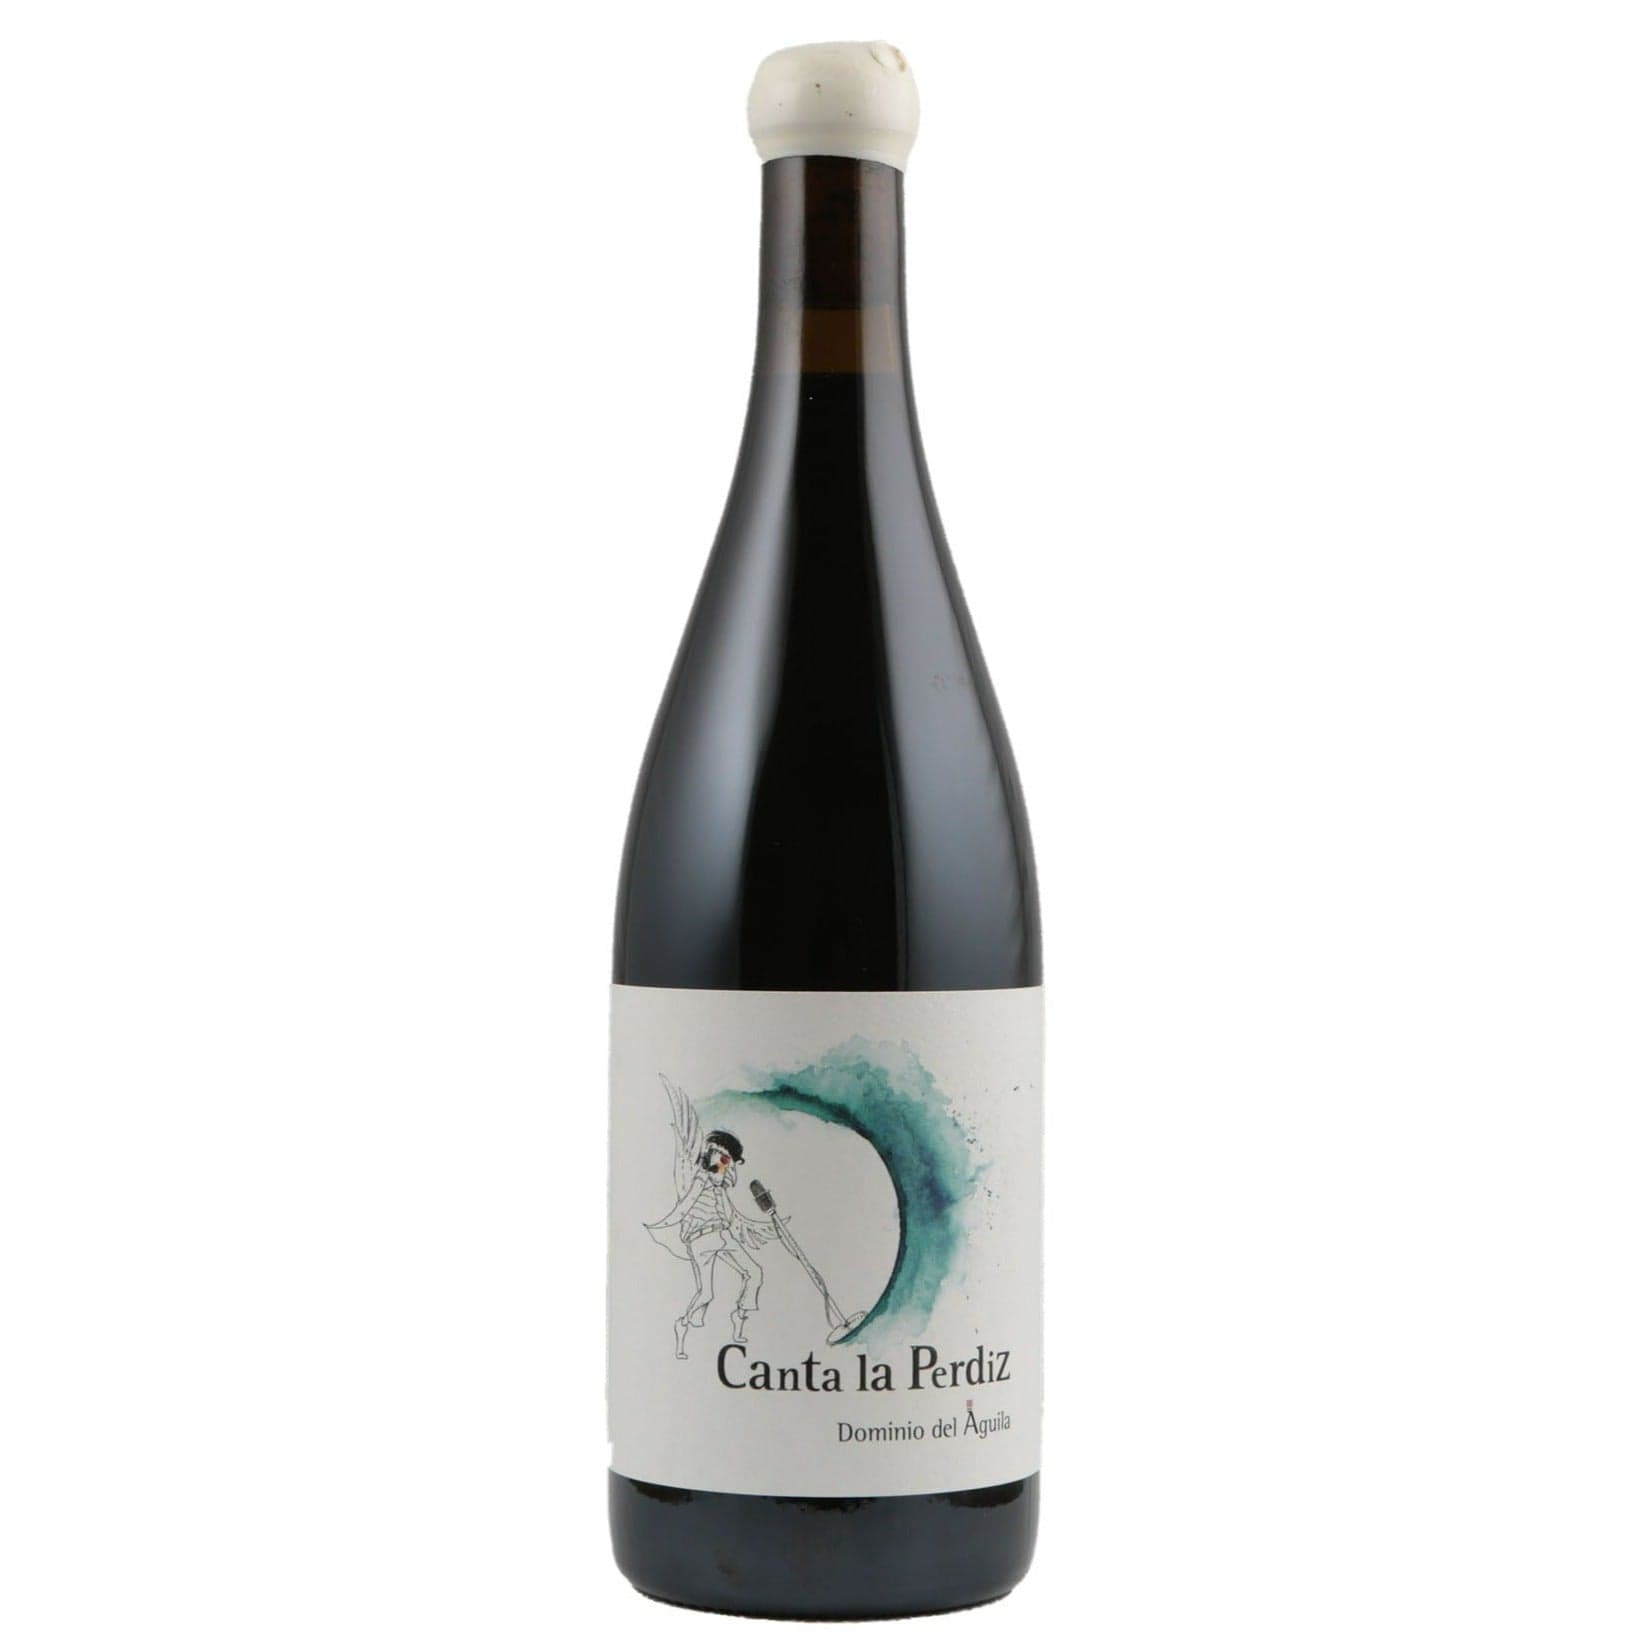 Single bottle of Red wine Dominio del Aguila, Canta la Perdiz, Ribera del Duero, 2016 Tempranillo blend